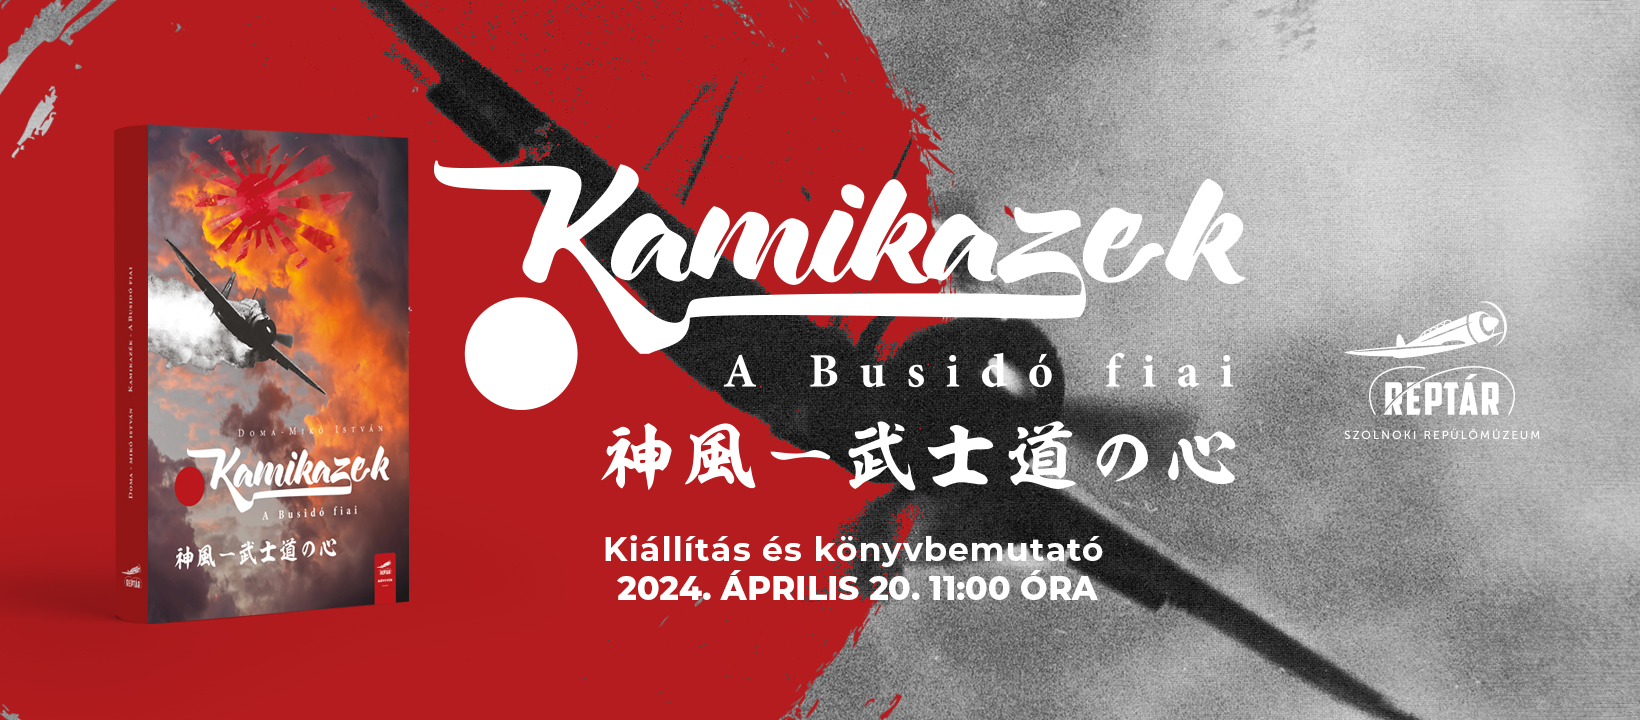 Kamikazek - A Busidó fiai címmel a szolnoki RepTárban